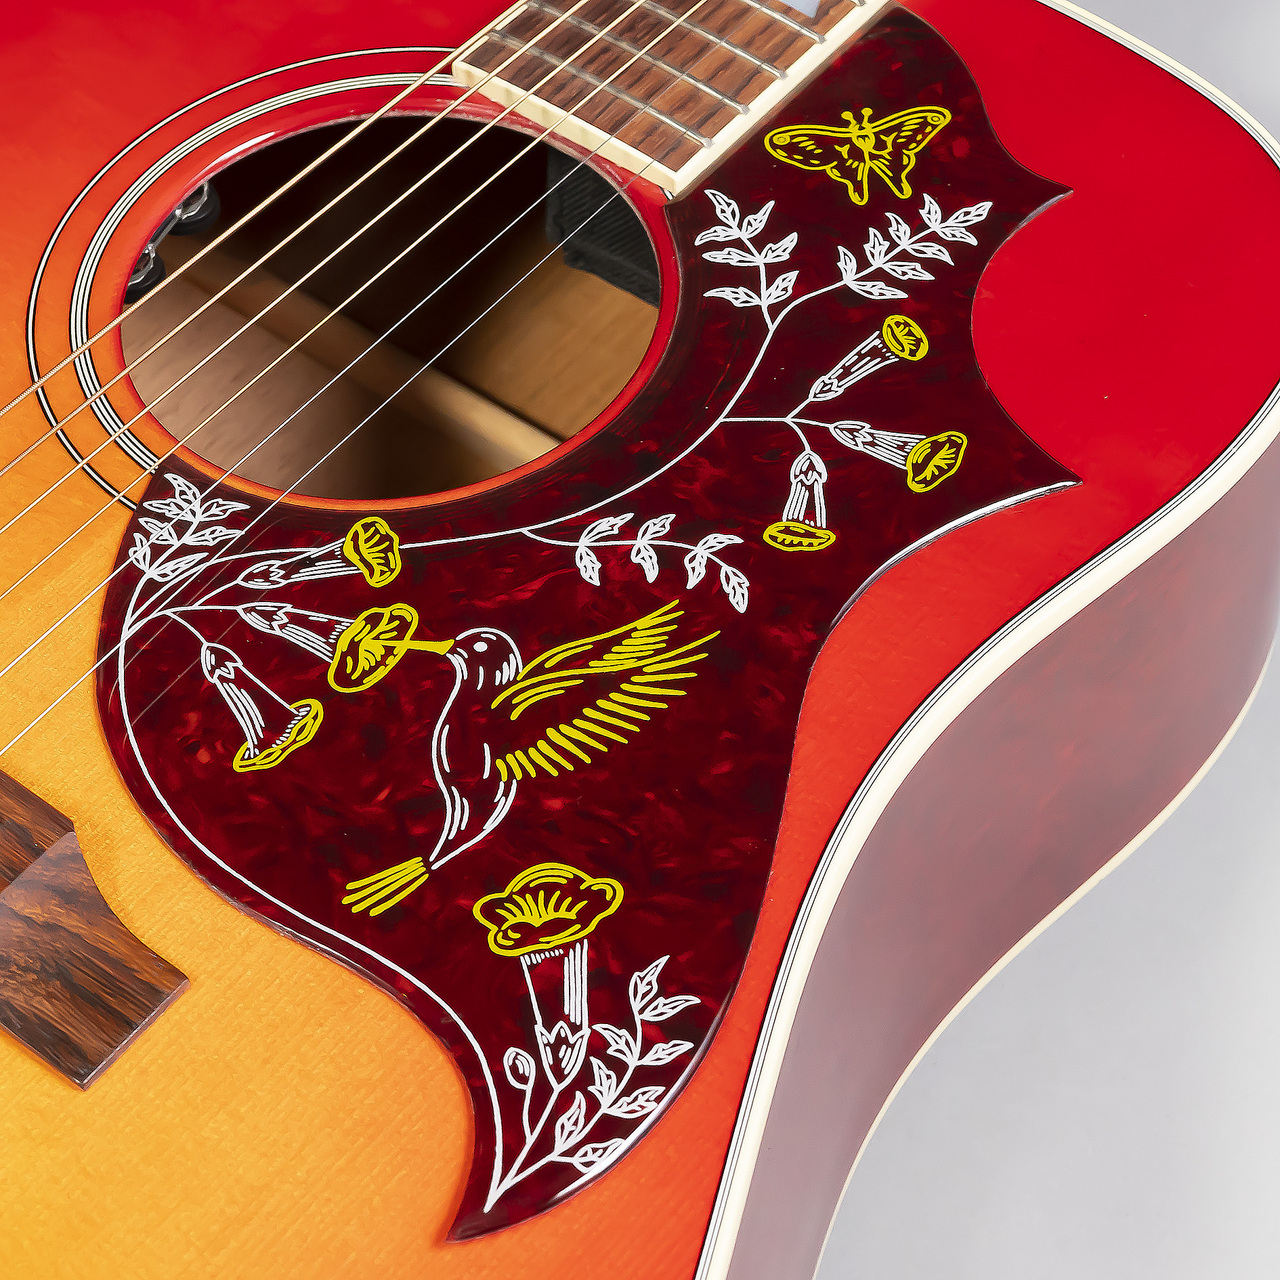 *Gibson Hummingbird 1960年、「弾き語りに最適なモデル」として誕生したHummingbird。ギブソンとしてはスクエアショルダー・シェイプの第一弾でした。木材の構成はギブソンを代表するJ-45と共通していますが、Hummingbirdの方がボディサイズが大きく容積があるため豊か […]